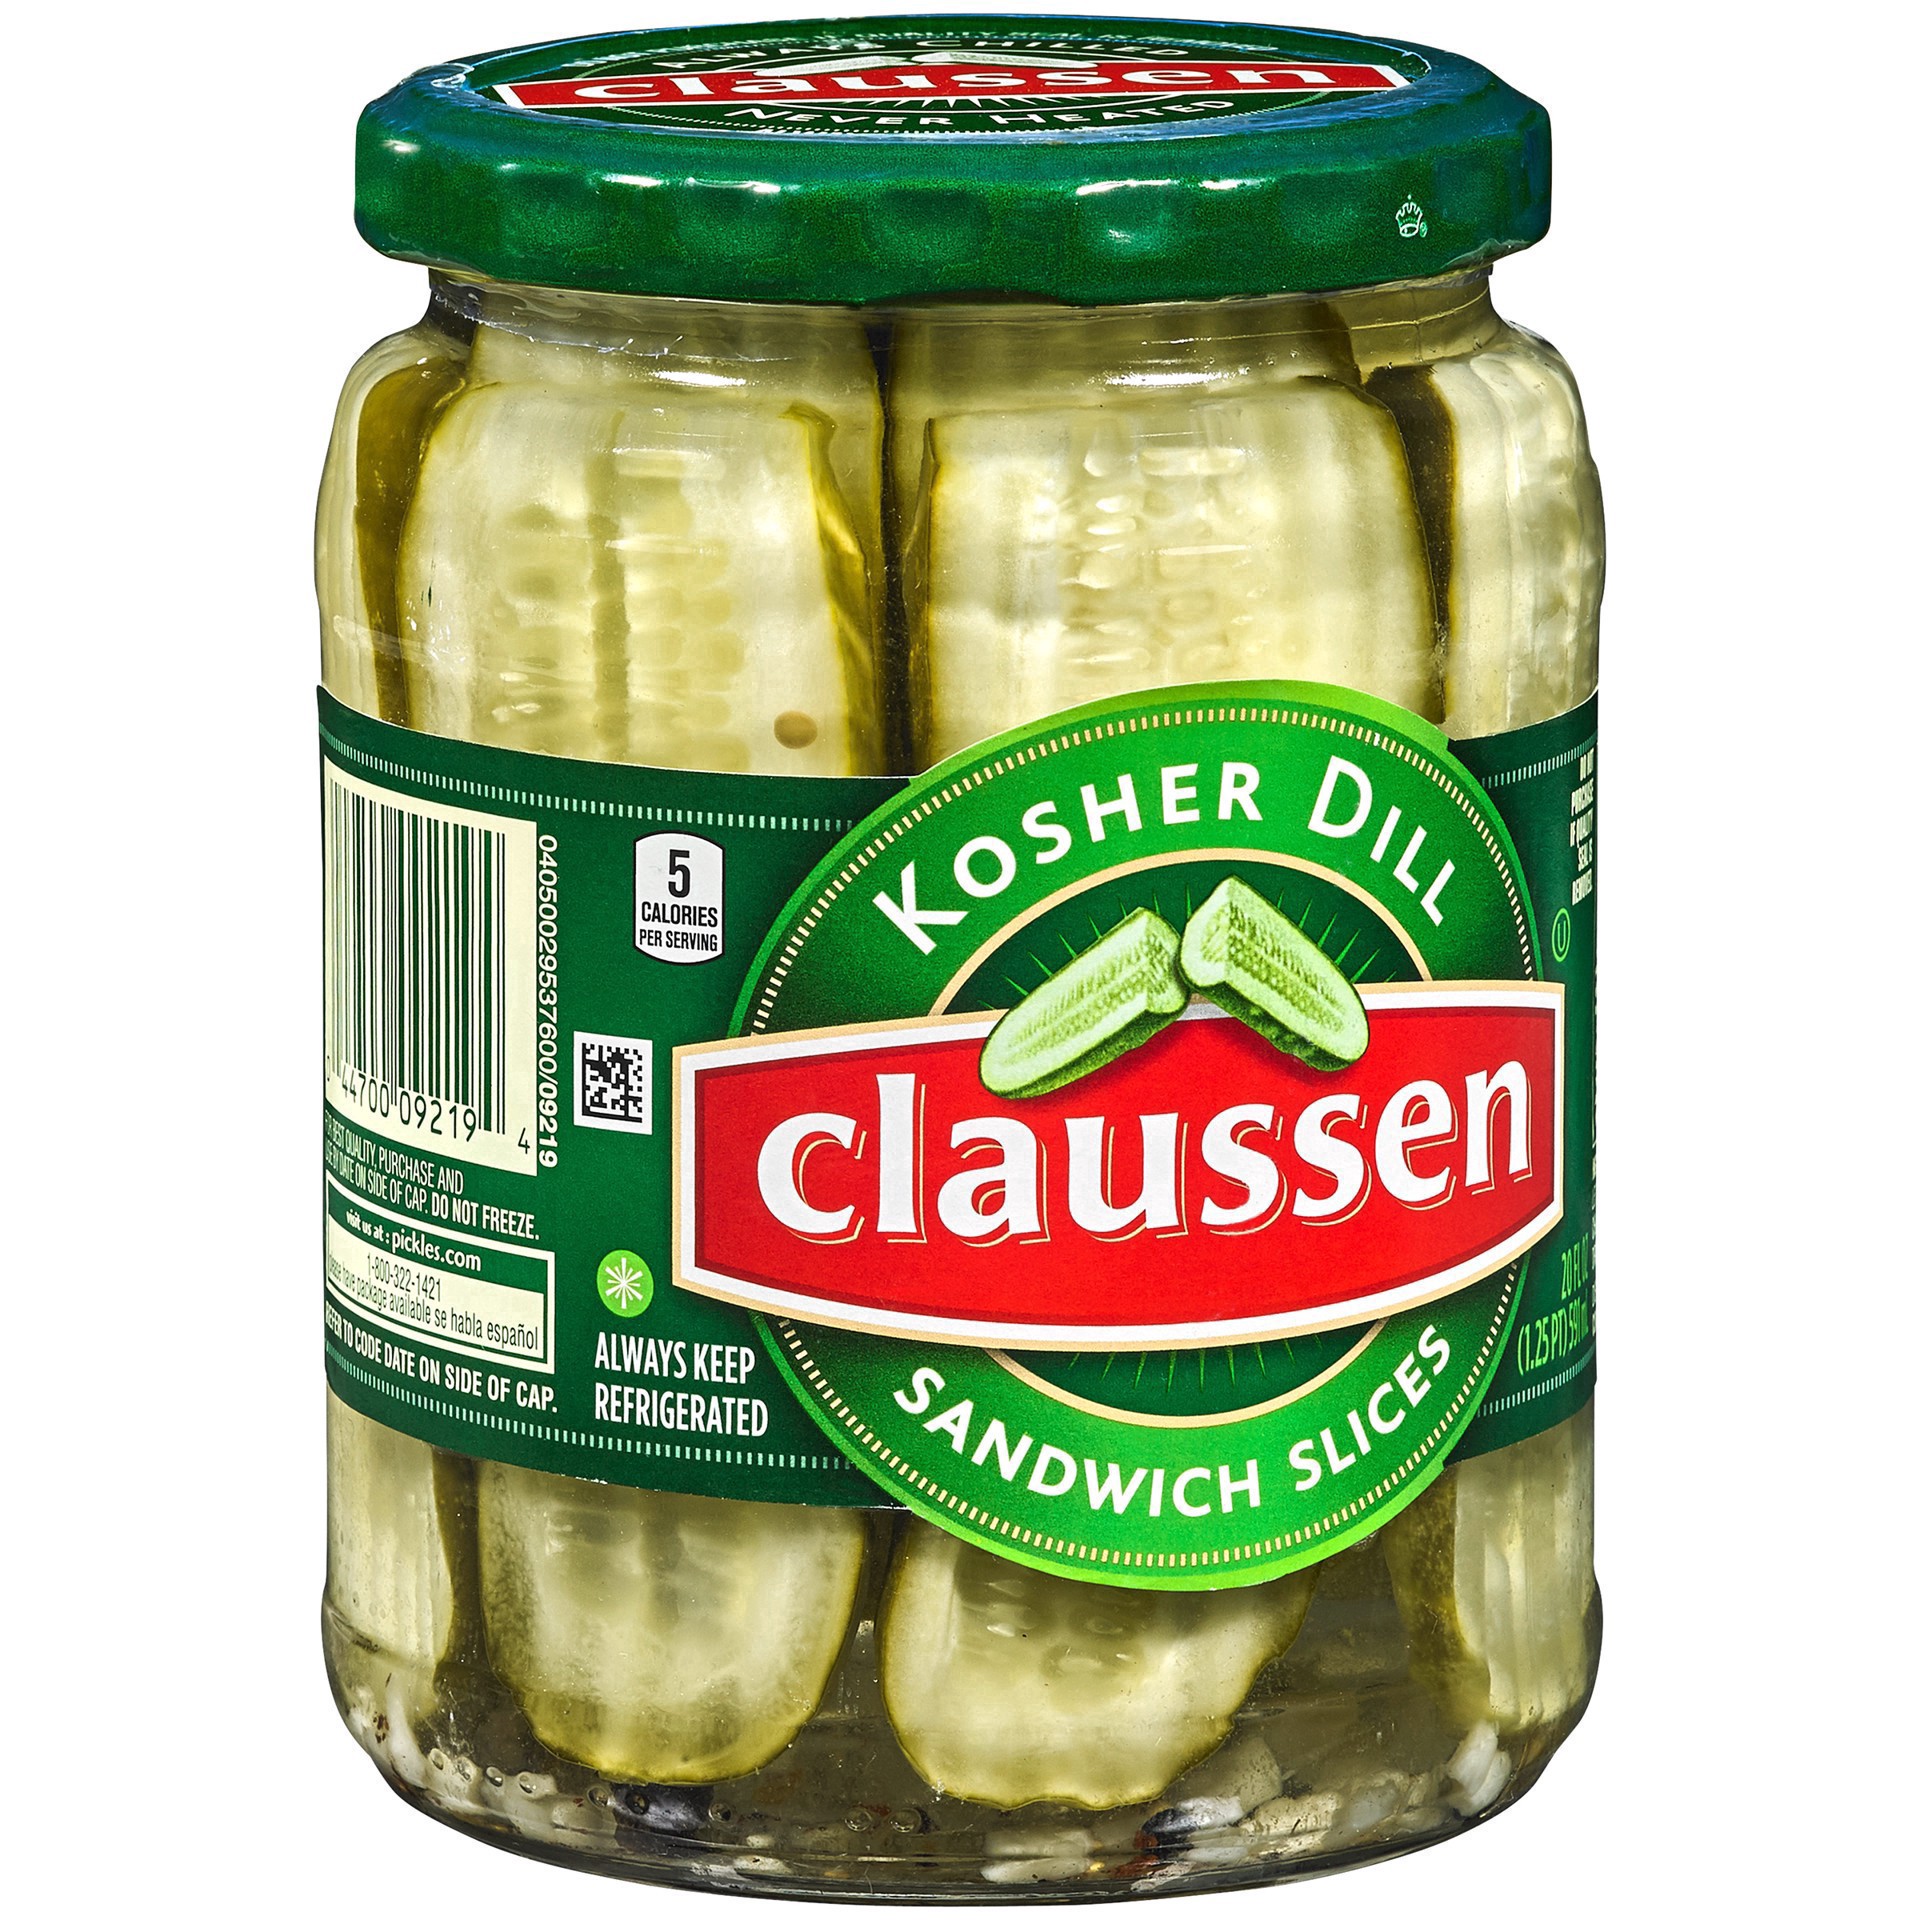 slide 37 of 144, Claussen Kosher Dill Pickle Sandwich Slices, 20 fl. oz. Jar, 20 fl oz